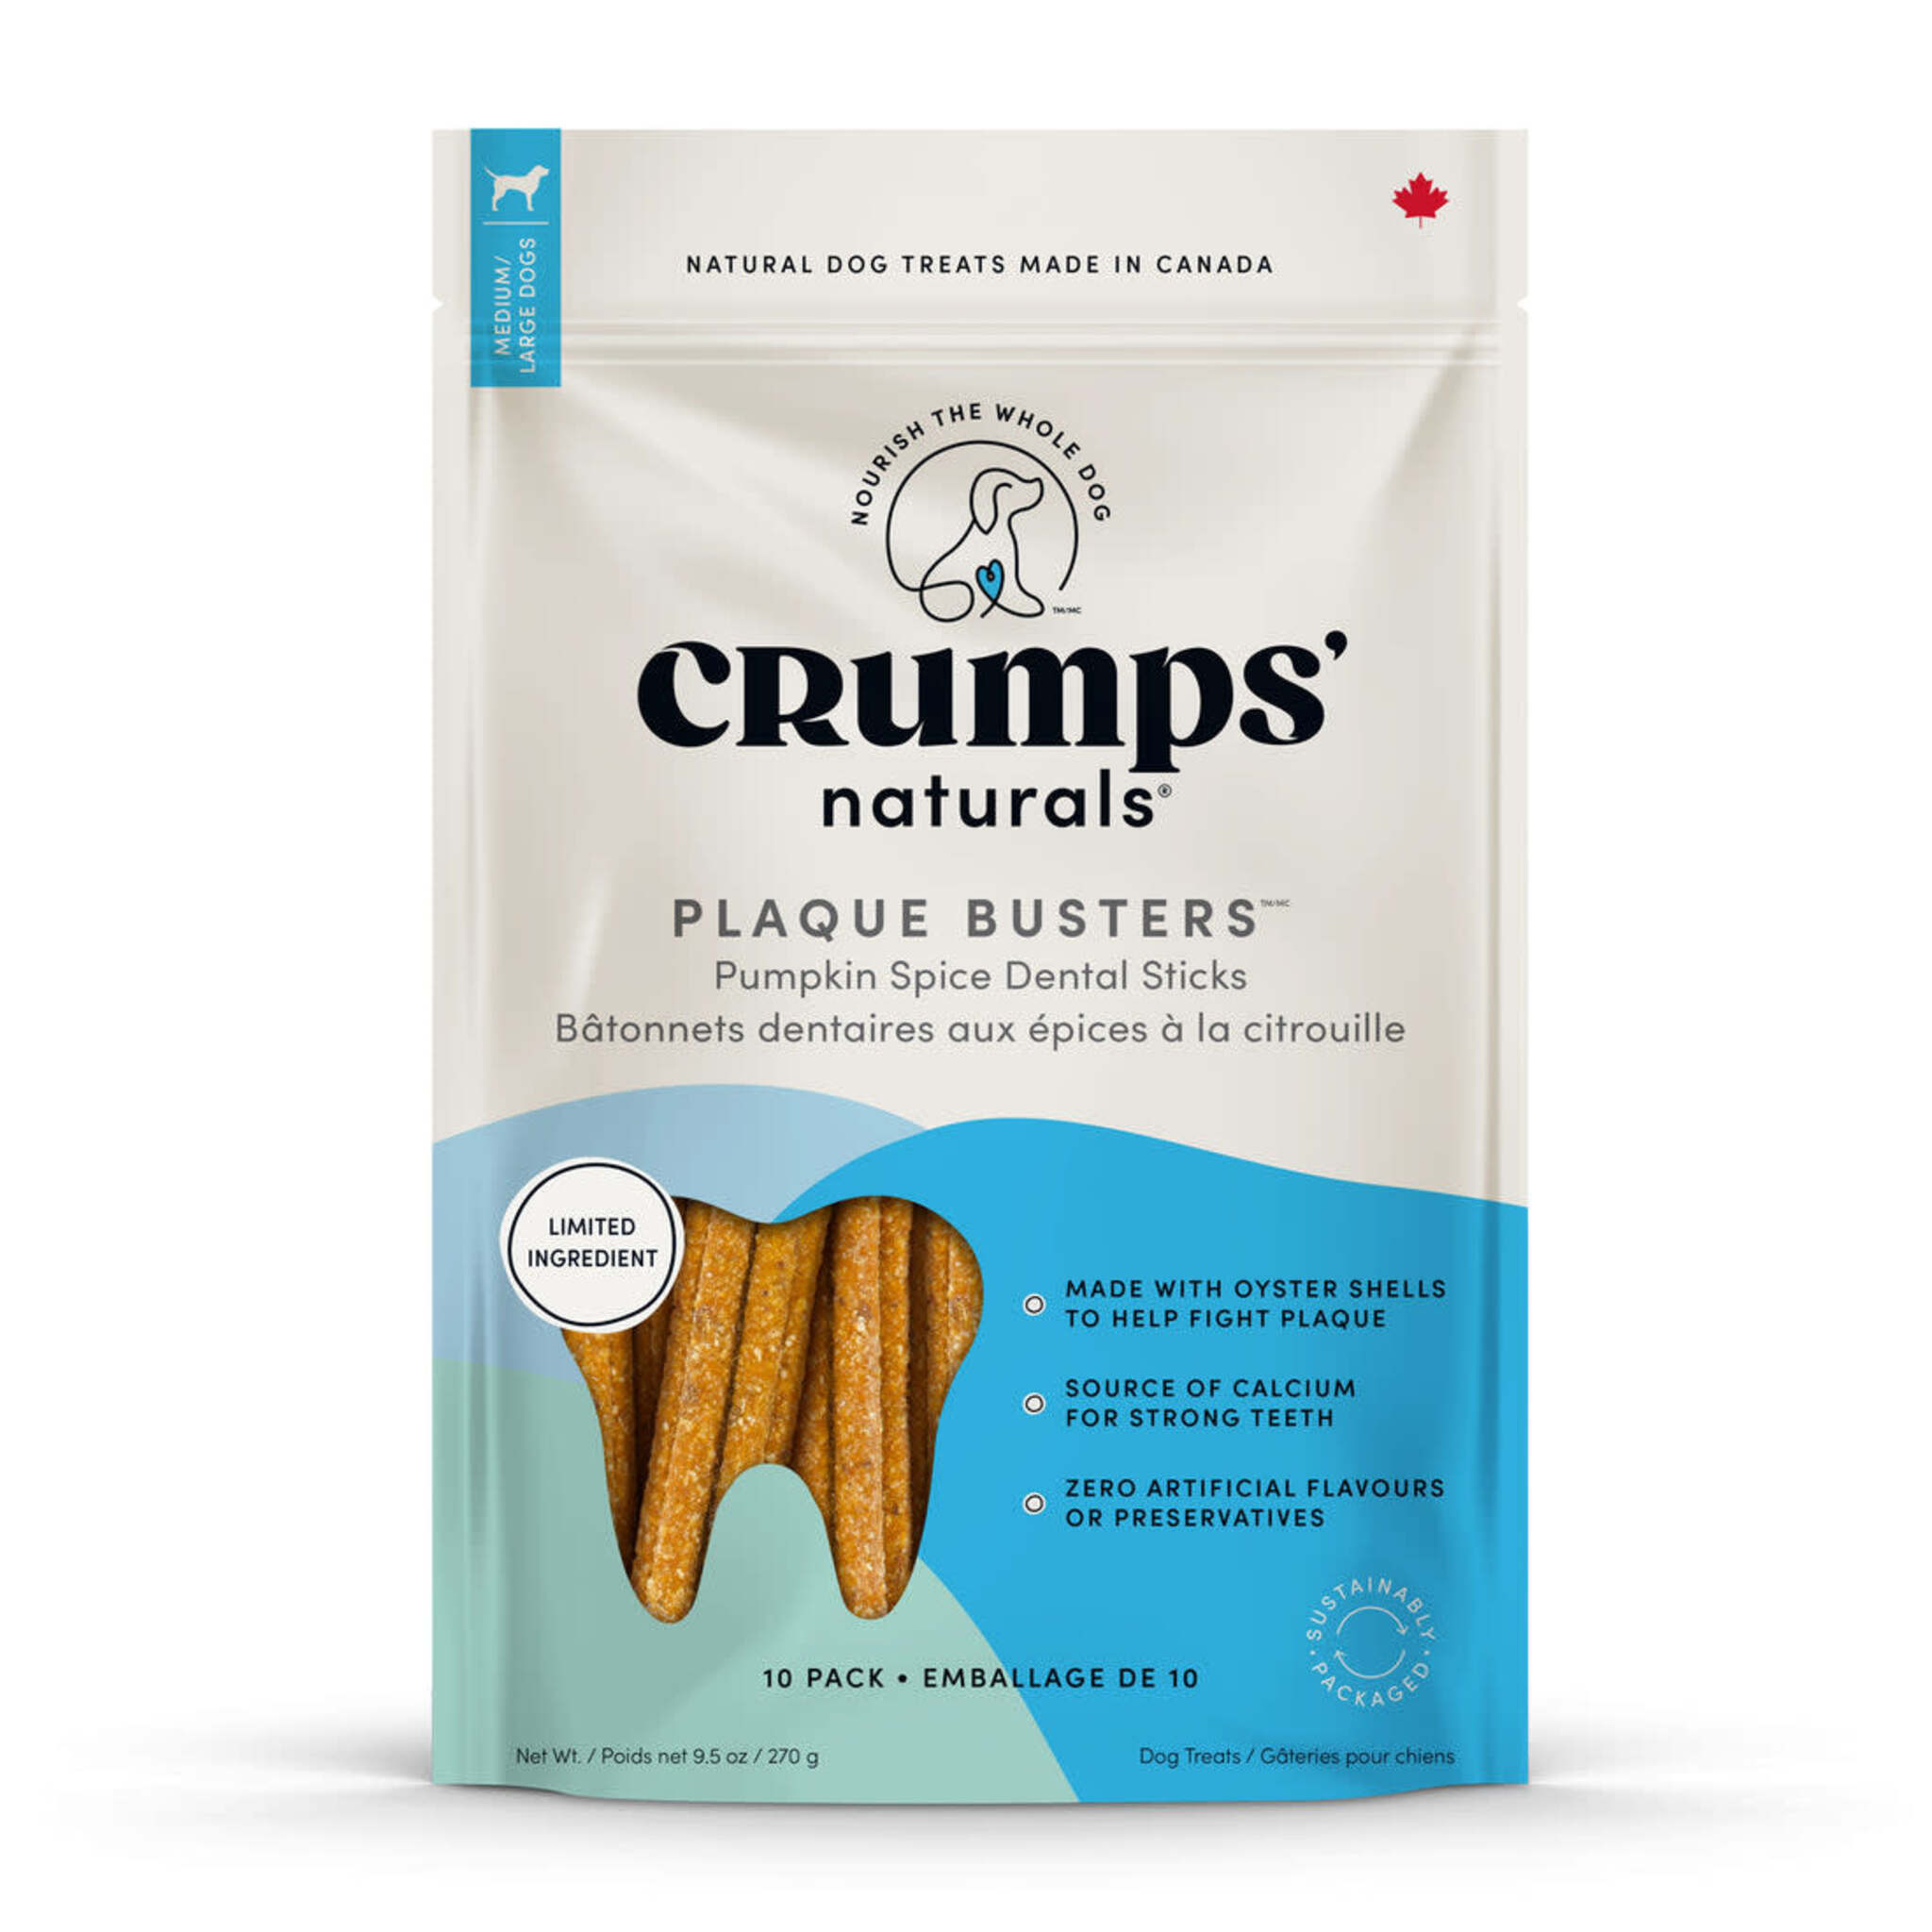 Crumps' Naturals Plaque Buster 7" Pumpkin Spice 10 pack Dog Treats